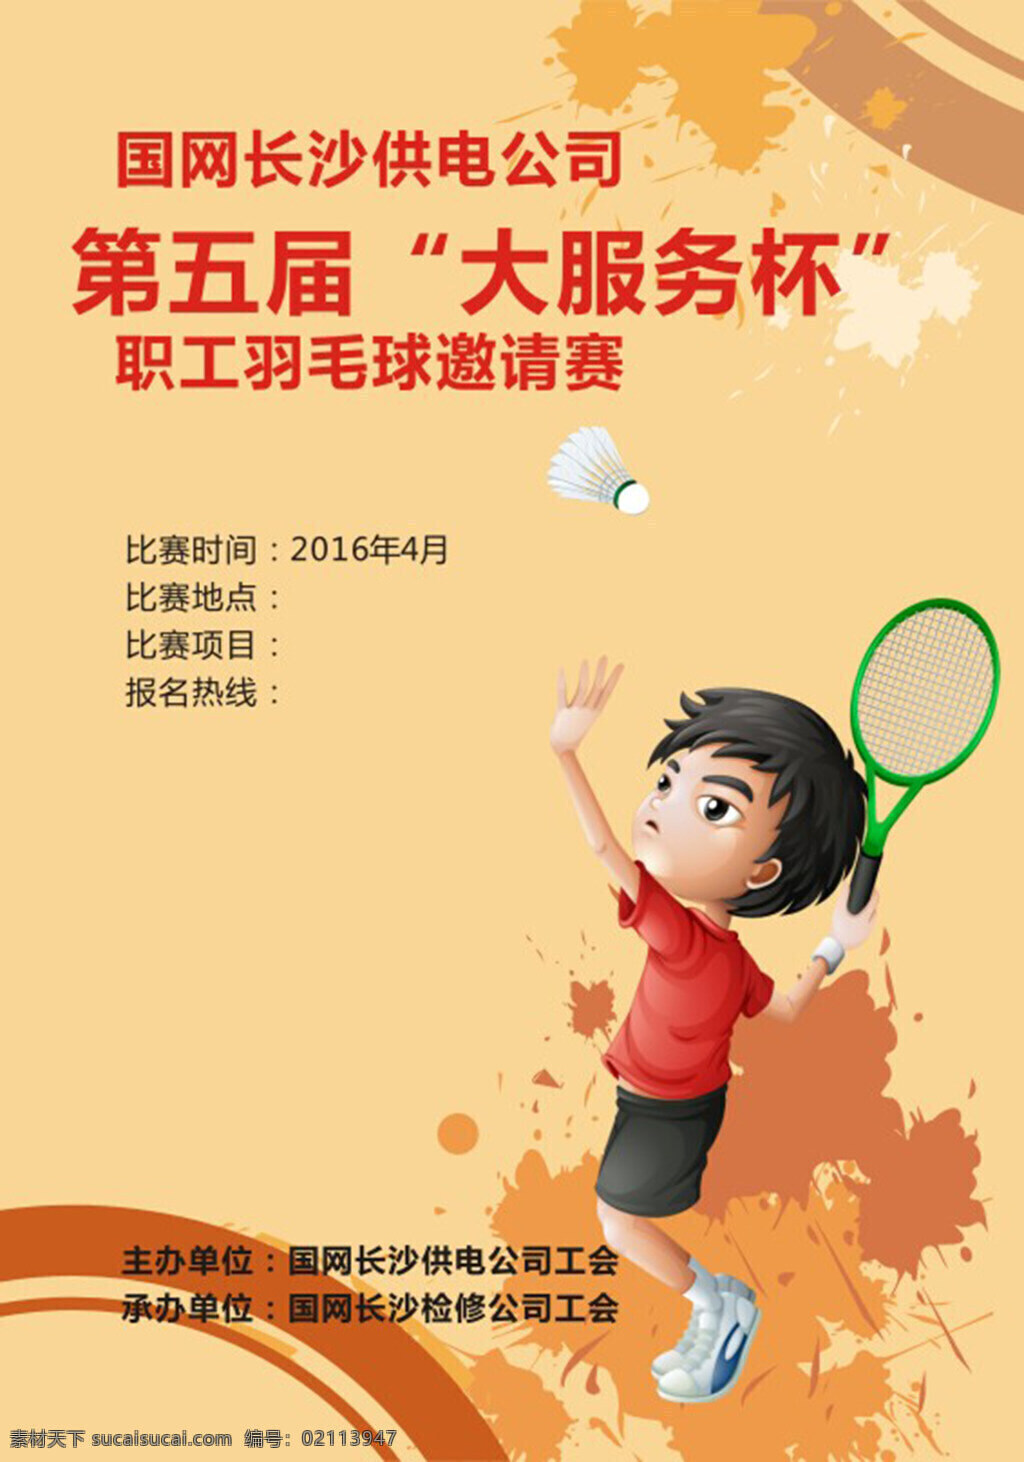 羽毛球海报 比赛海报 运动 羽毛球 网球 职工 邀请赛 海报 创意海报 时尚海报 宣传海报 卡通羽毛球手 黄色